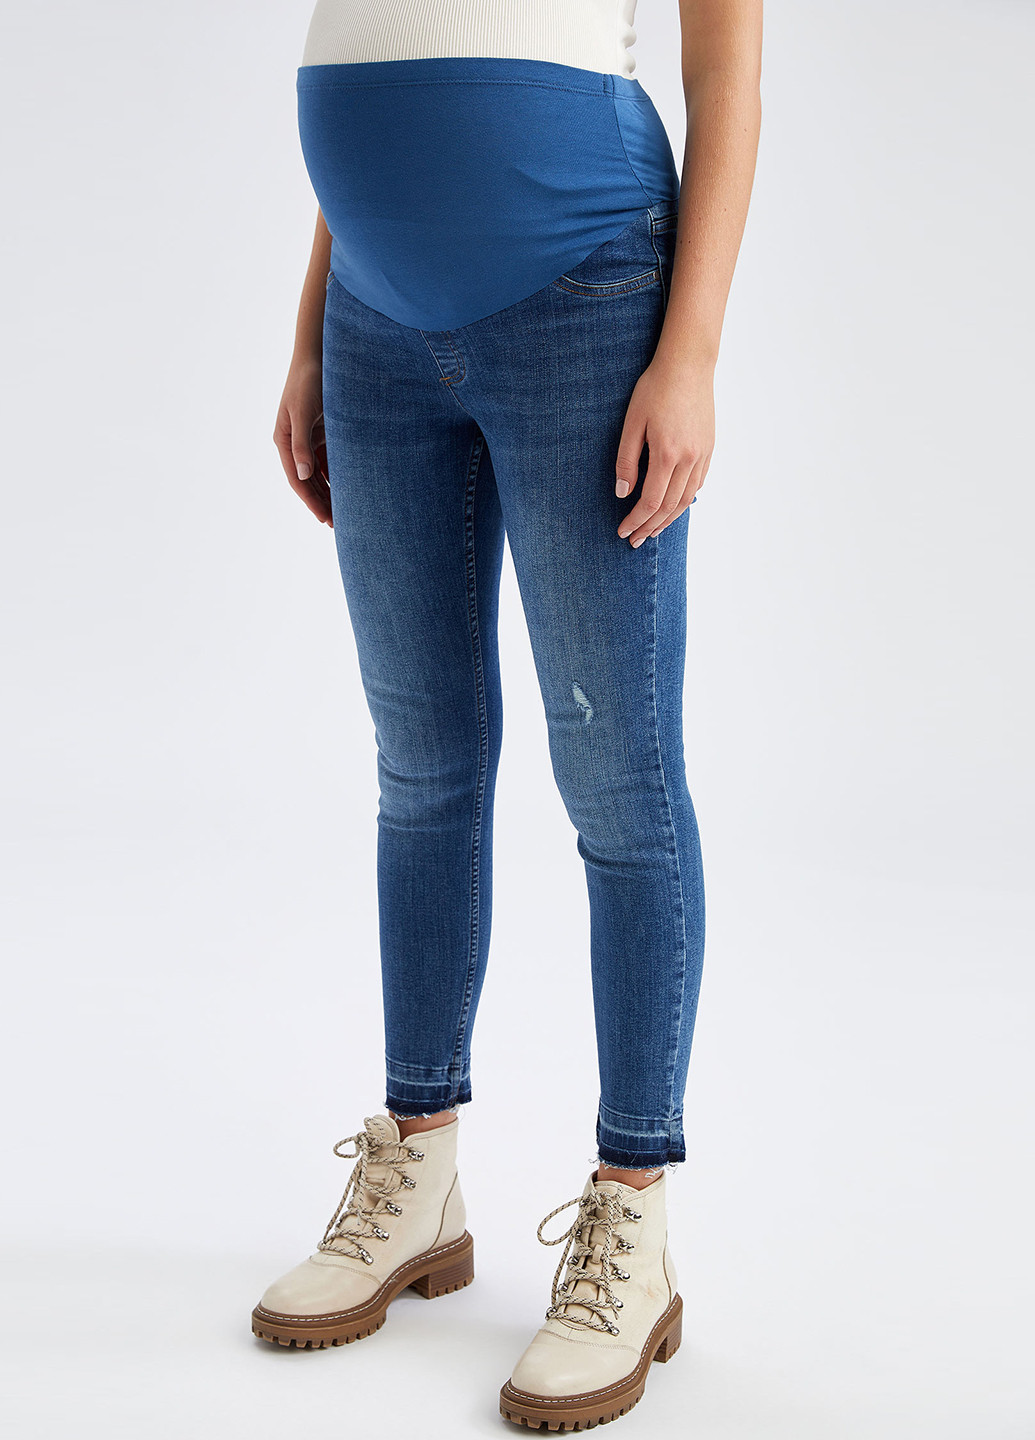 Синие демисезонные скинни джинсы для беременных DeFacto